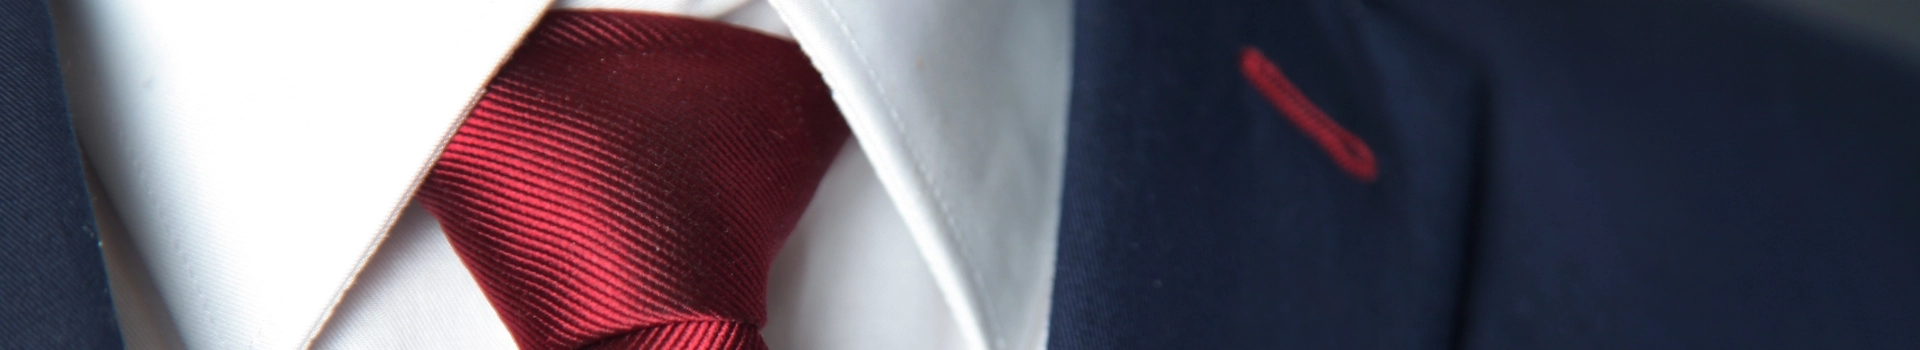 czerwony krawat zawiązany pod koszulą z marynarką